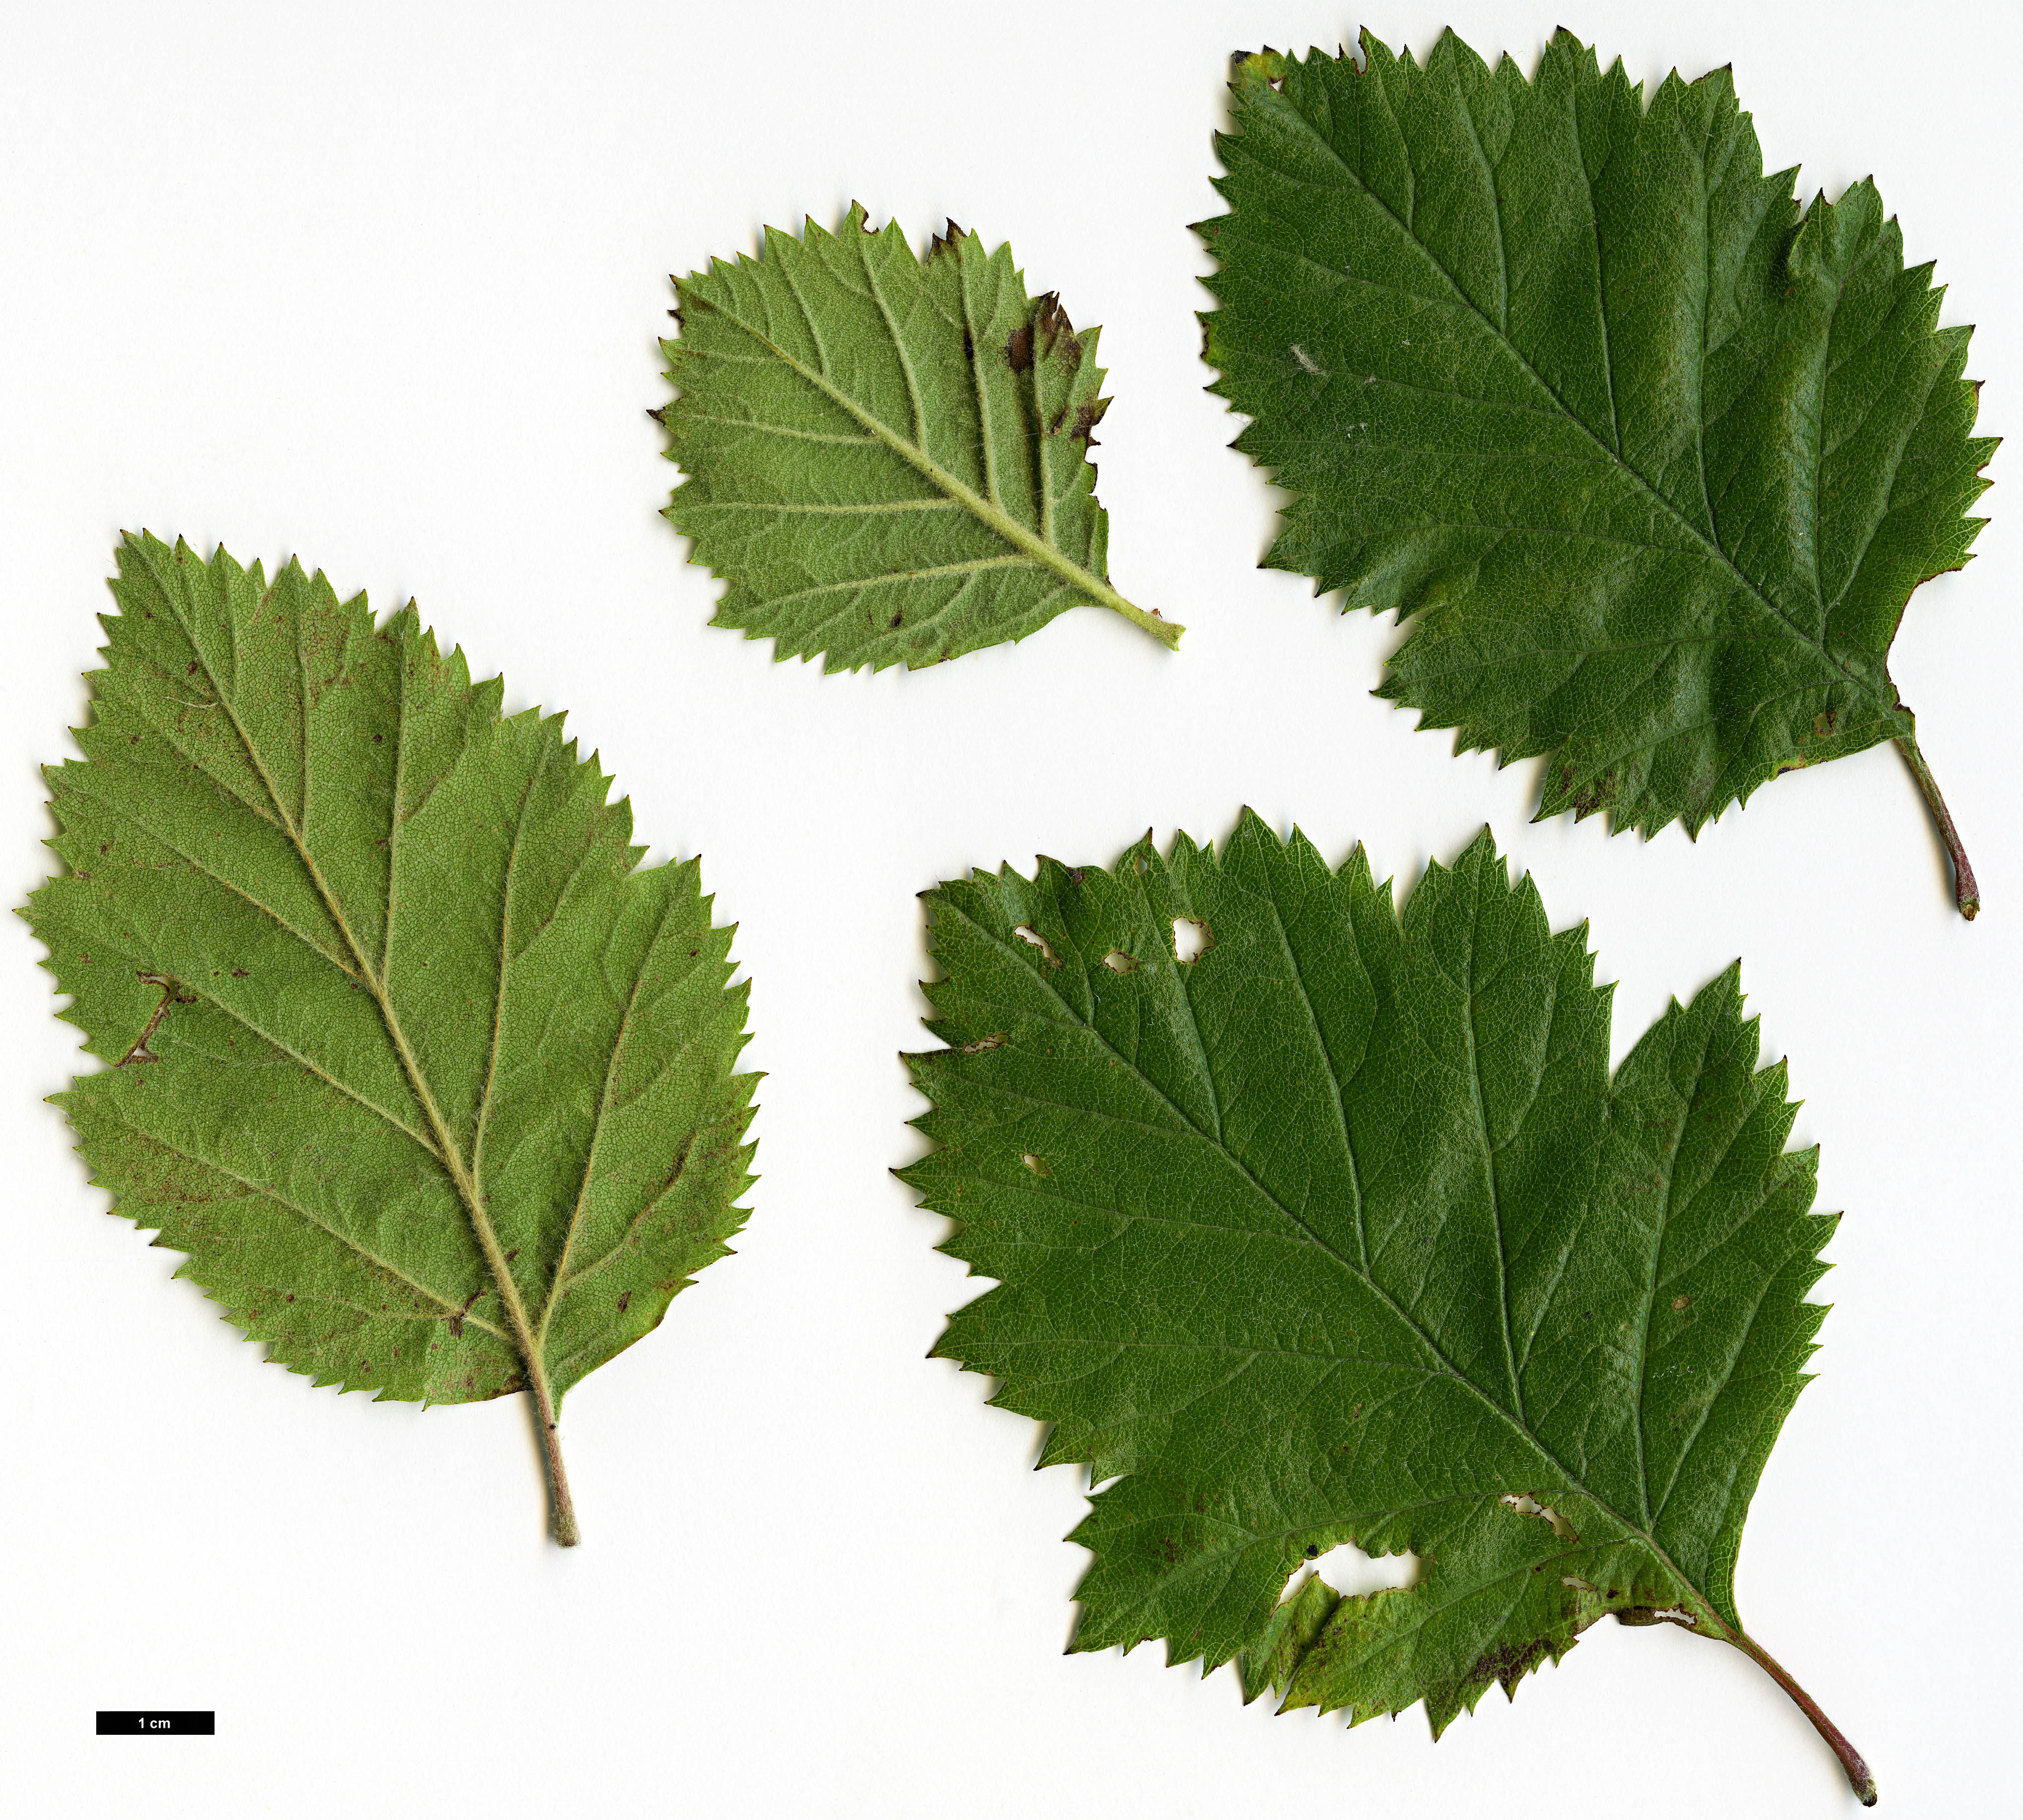 High resolution image: Family: Rosaceae - Genus: Crataegus - Taxon: brazoria